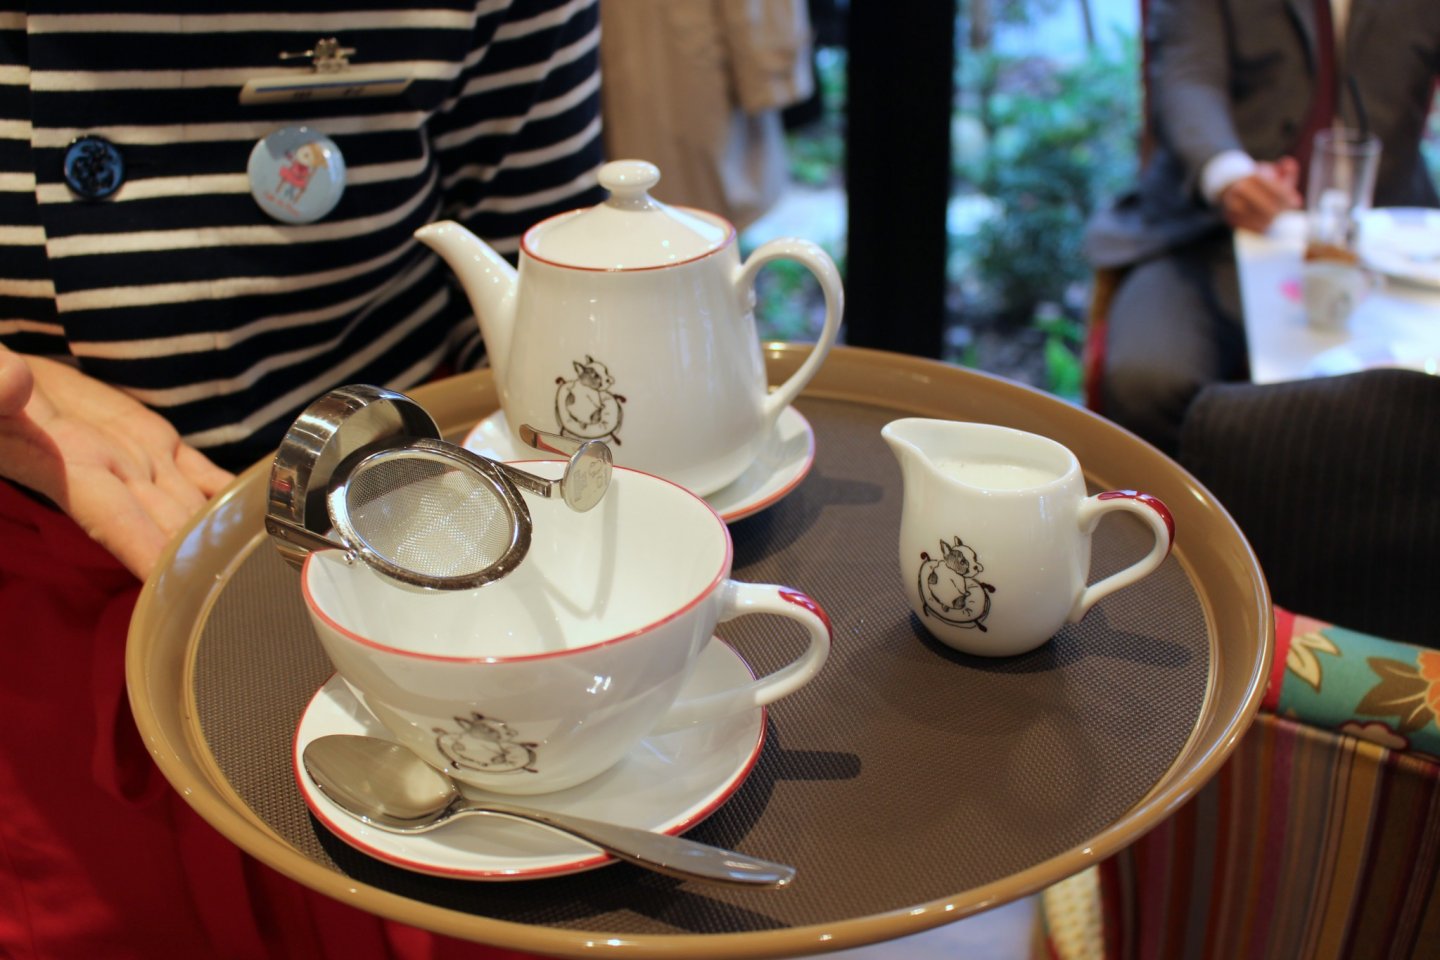 Cafe La Pause's tea service.